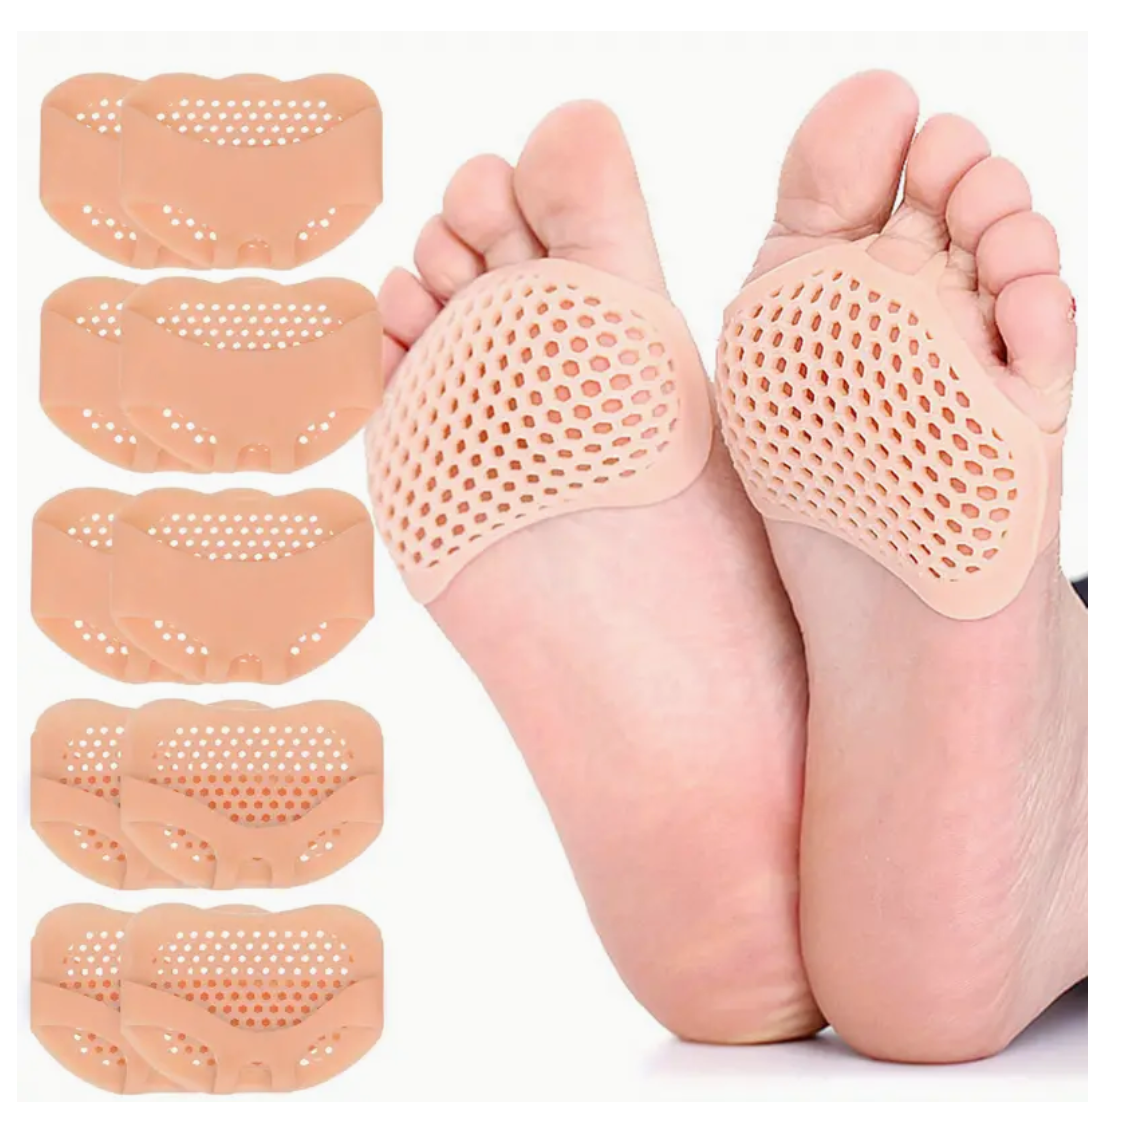 Gel Foot Cushions Pads, Metatarsal Pads For Women & Men 10 pairs